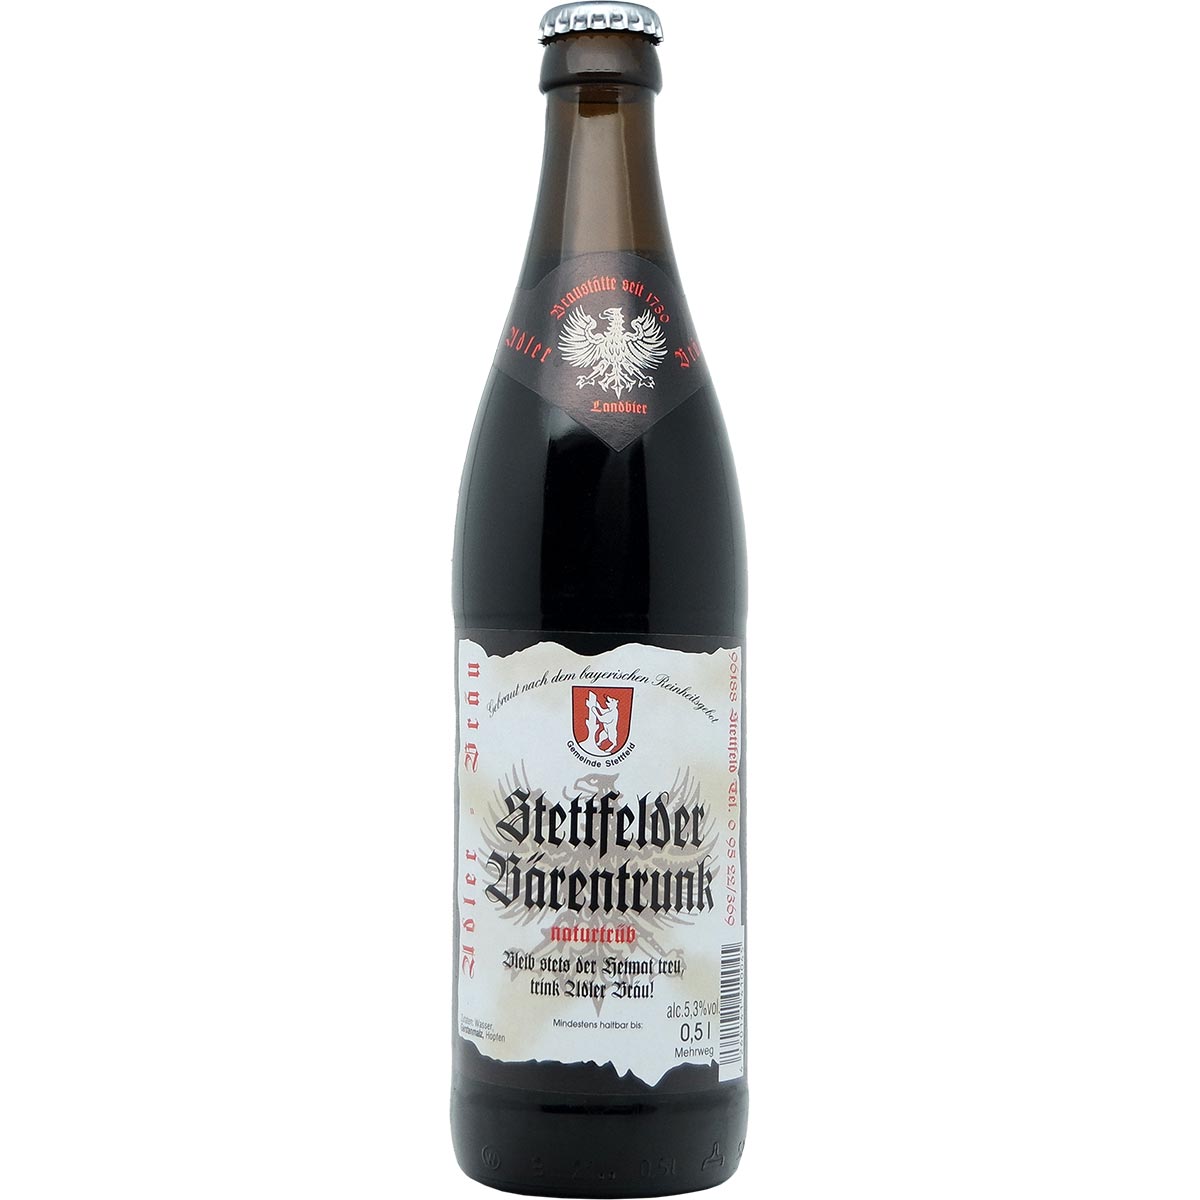 Brauerei Adler Stettfelder Bärentrunk kaufen